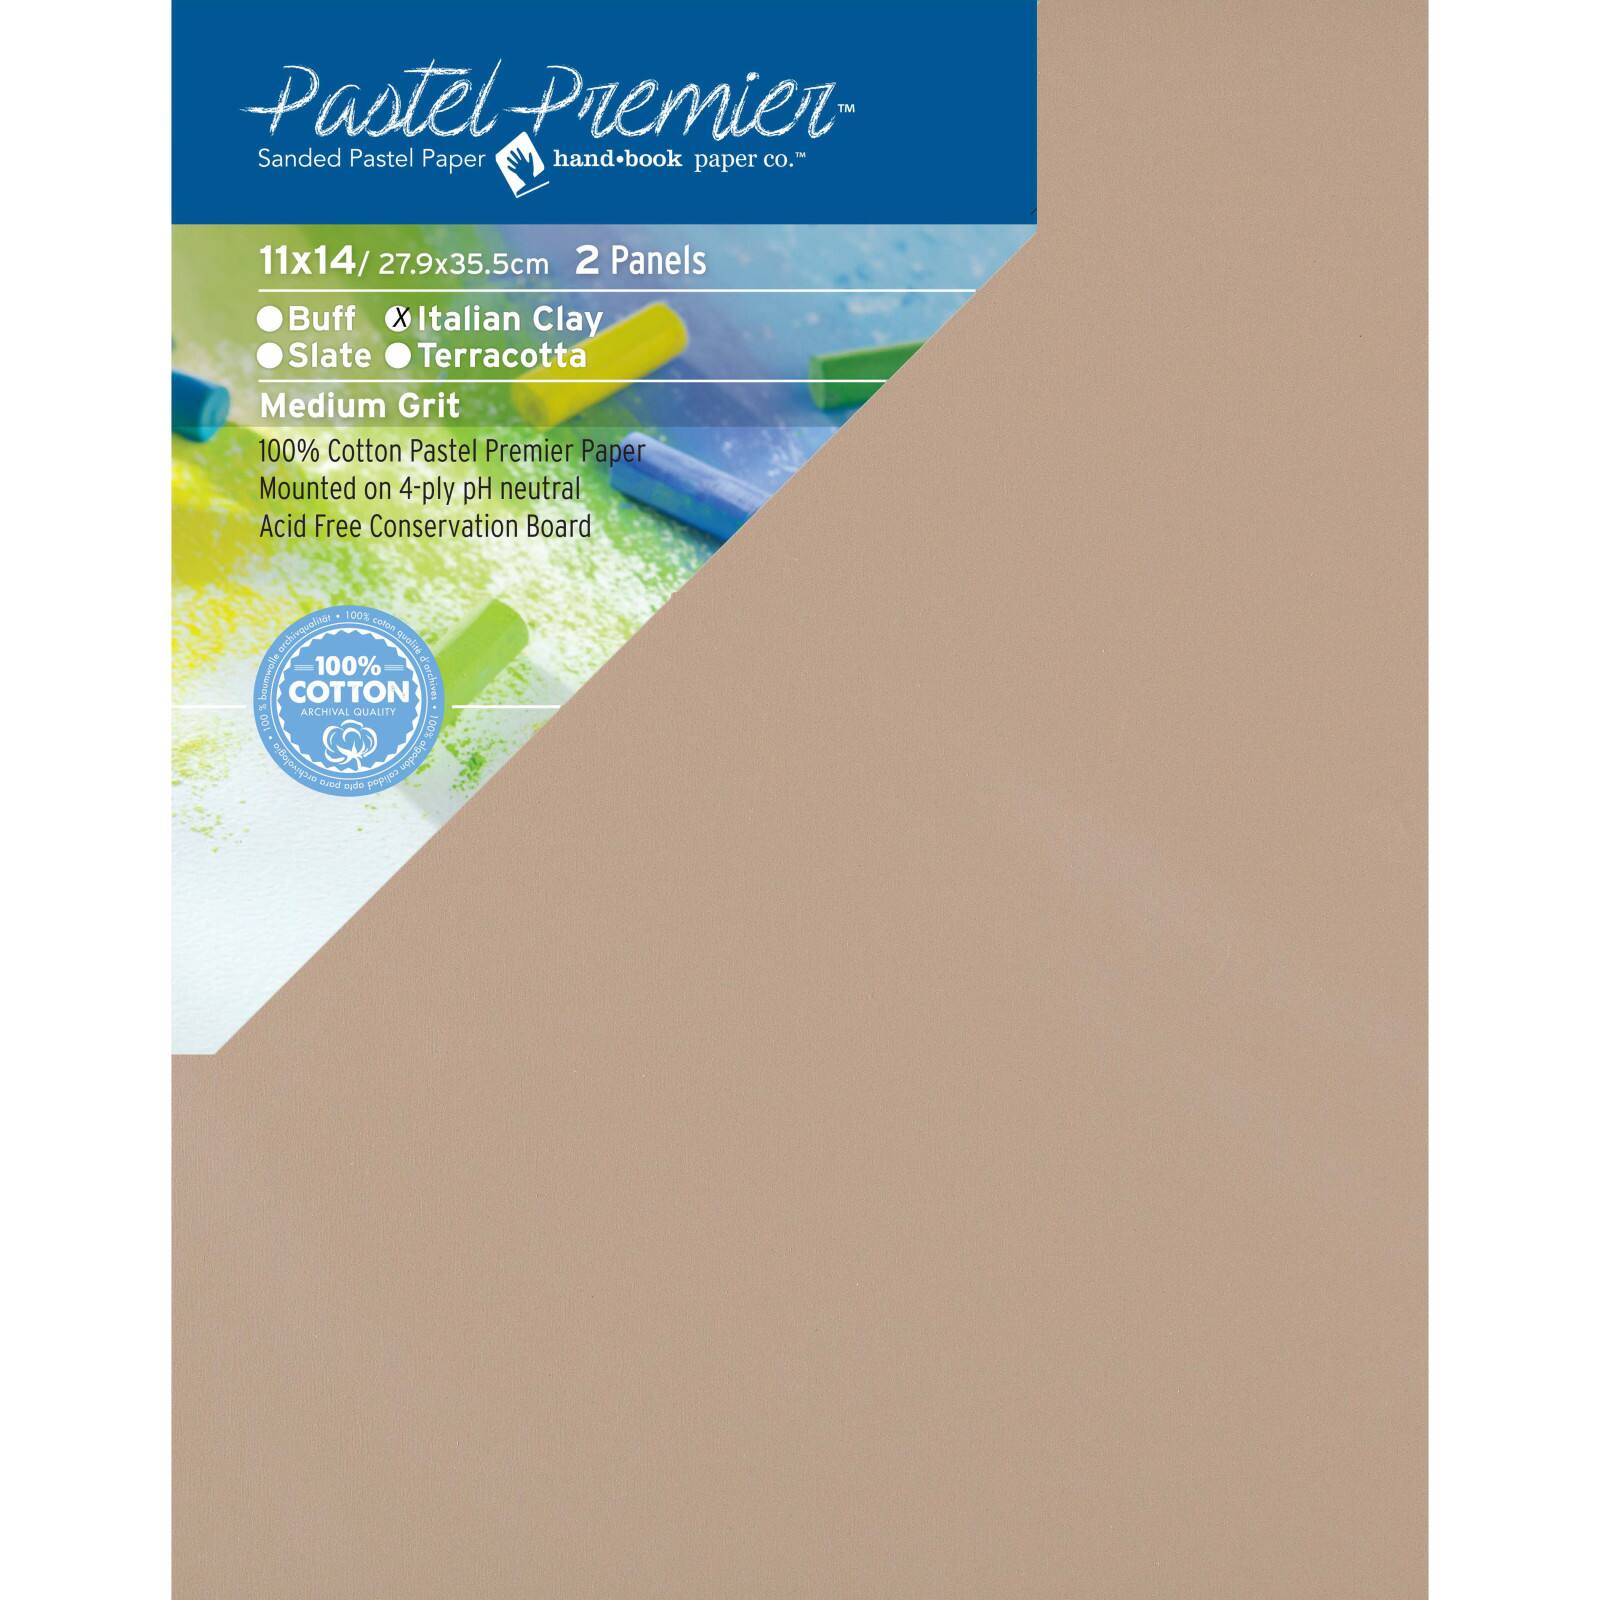 White Medium Grit 145 lb, Pastel Premier Sanded Pastel Paper 12 x 16 Inches 